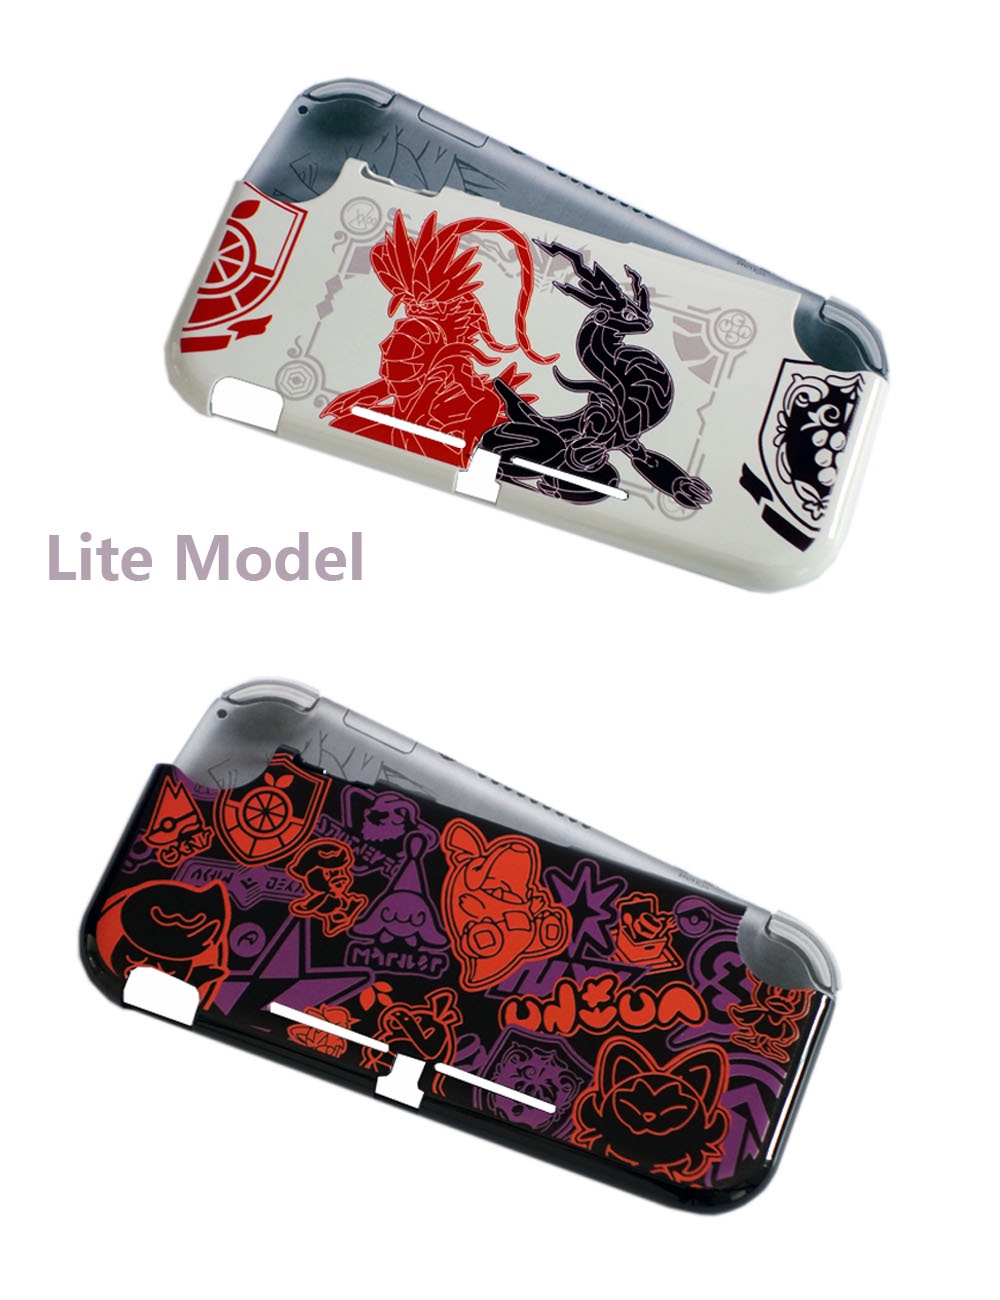 รายละเอียดเพิ่มเติมเกี่ยวกับ เคสป้องกันรอย ลาย Pokmon Scarlet Violet อุปกรณ์เสริม สําหรับ Nintendo Switch V1 V2 OLED Lite